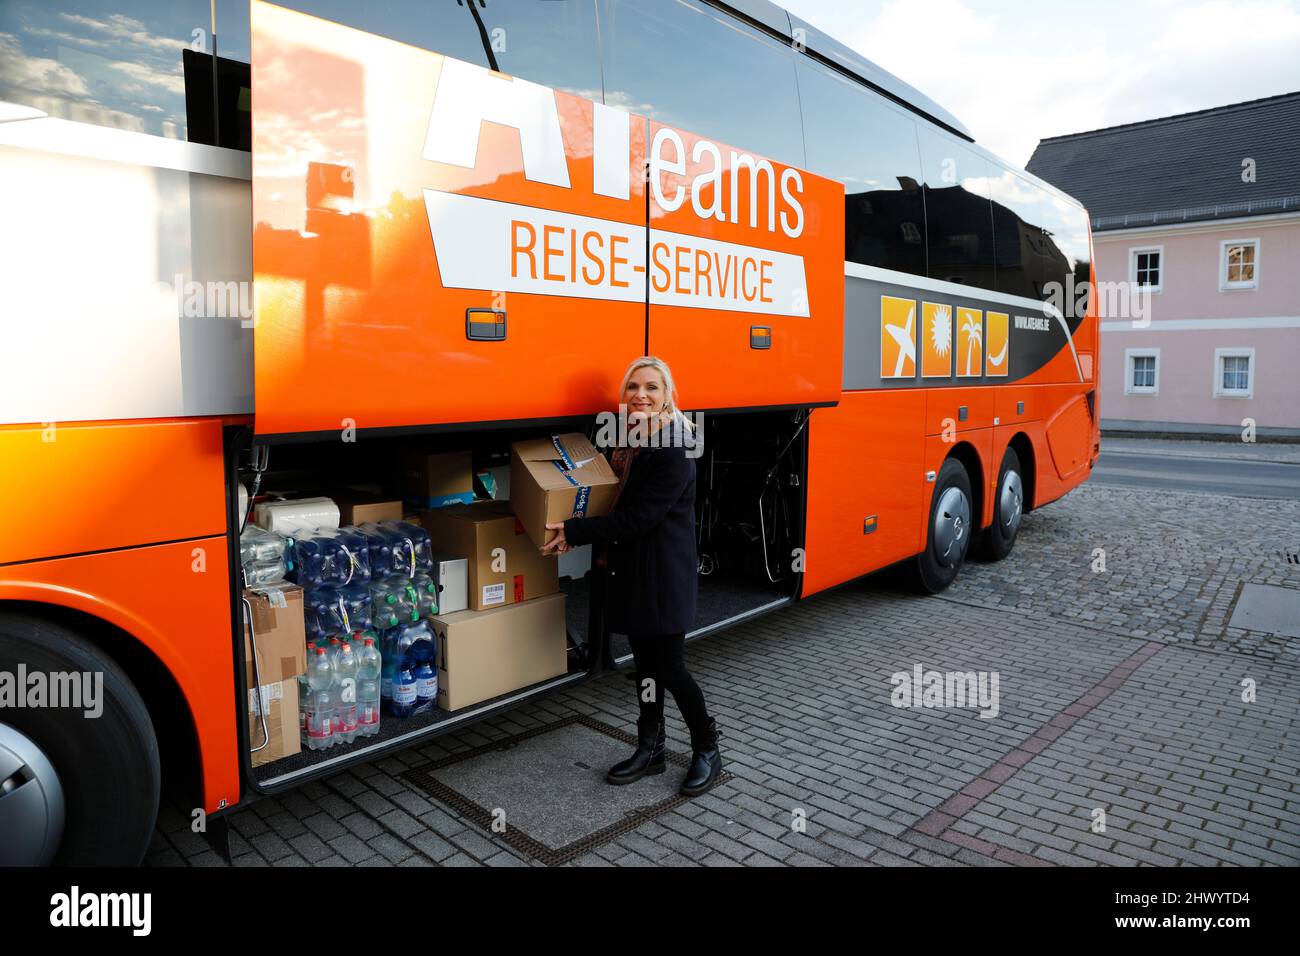 Uta Bresan engagiert sich für die Bus Brücke und hilft beim beladen der Busse. Außerdem brachte sie einen Kofferraum voller Lebensmittel - Zwei Reiseb Stock Photo